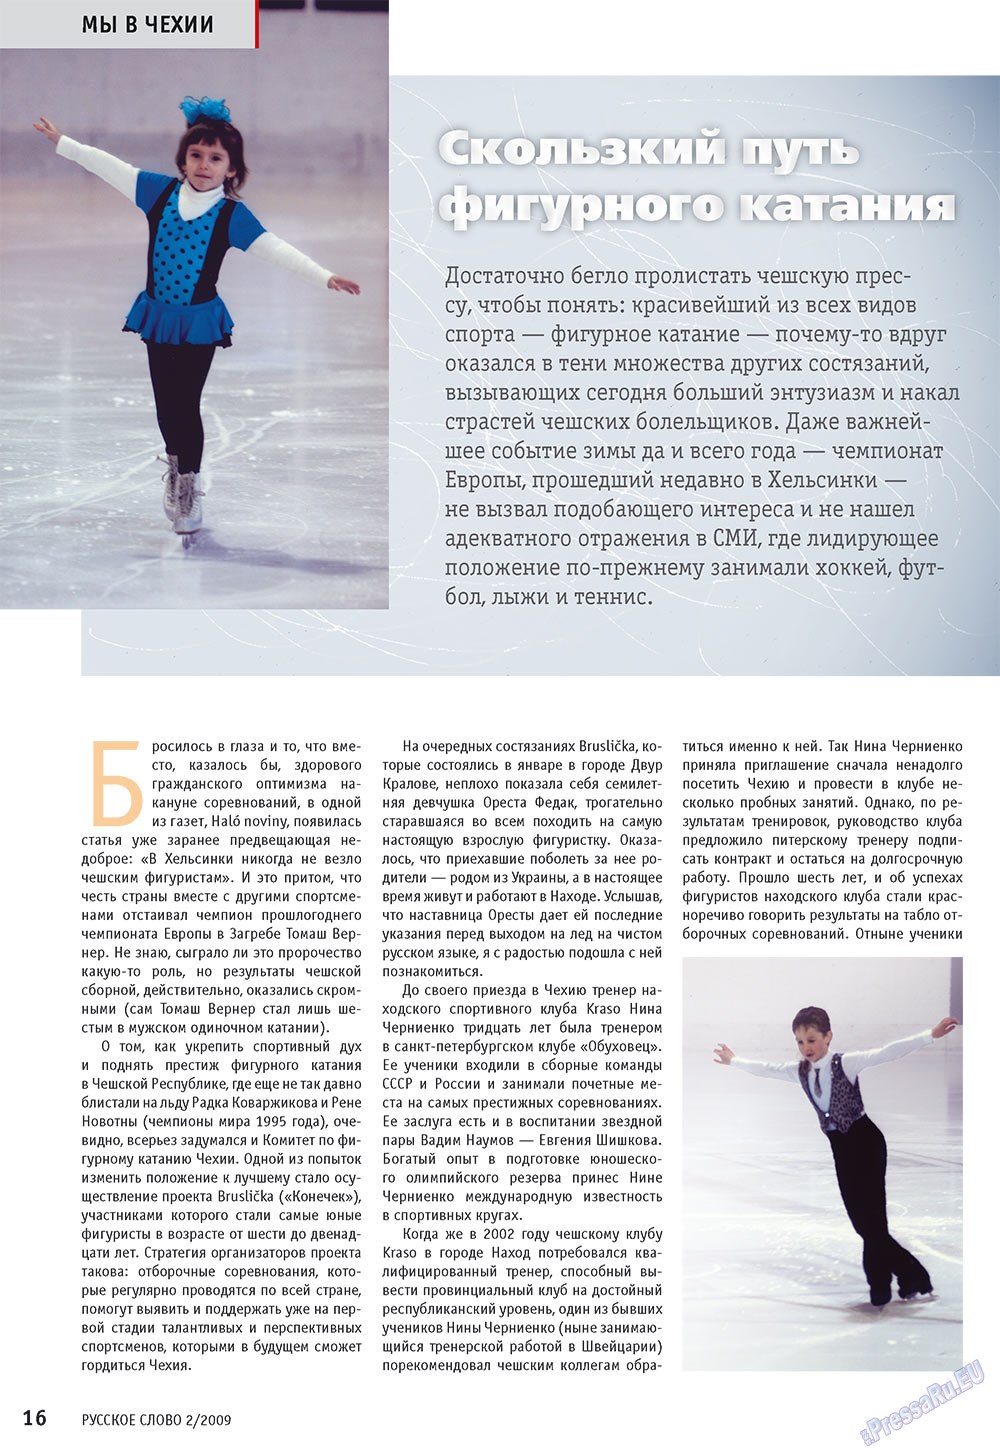 Русское слово, журнал. 2009 №2 стр.18